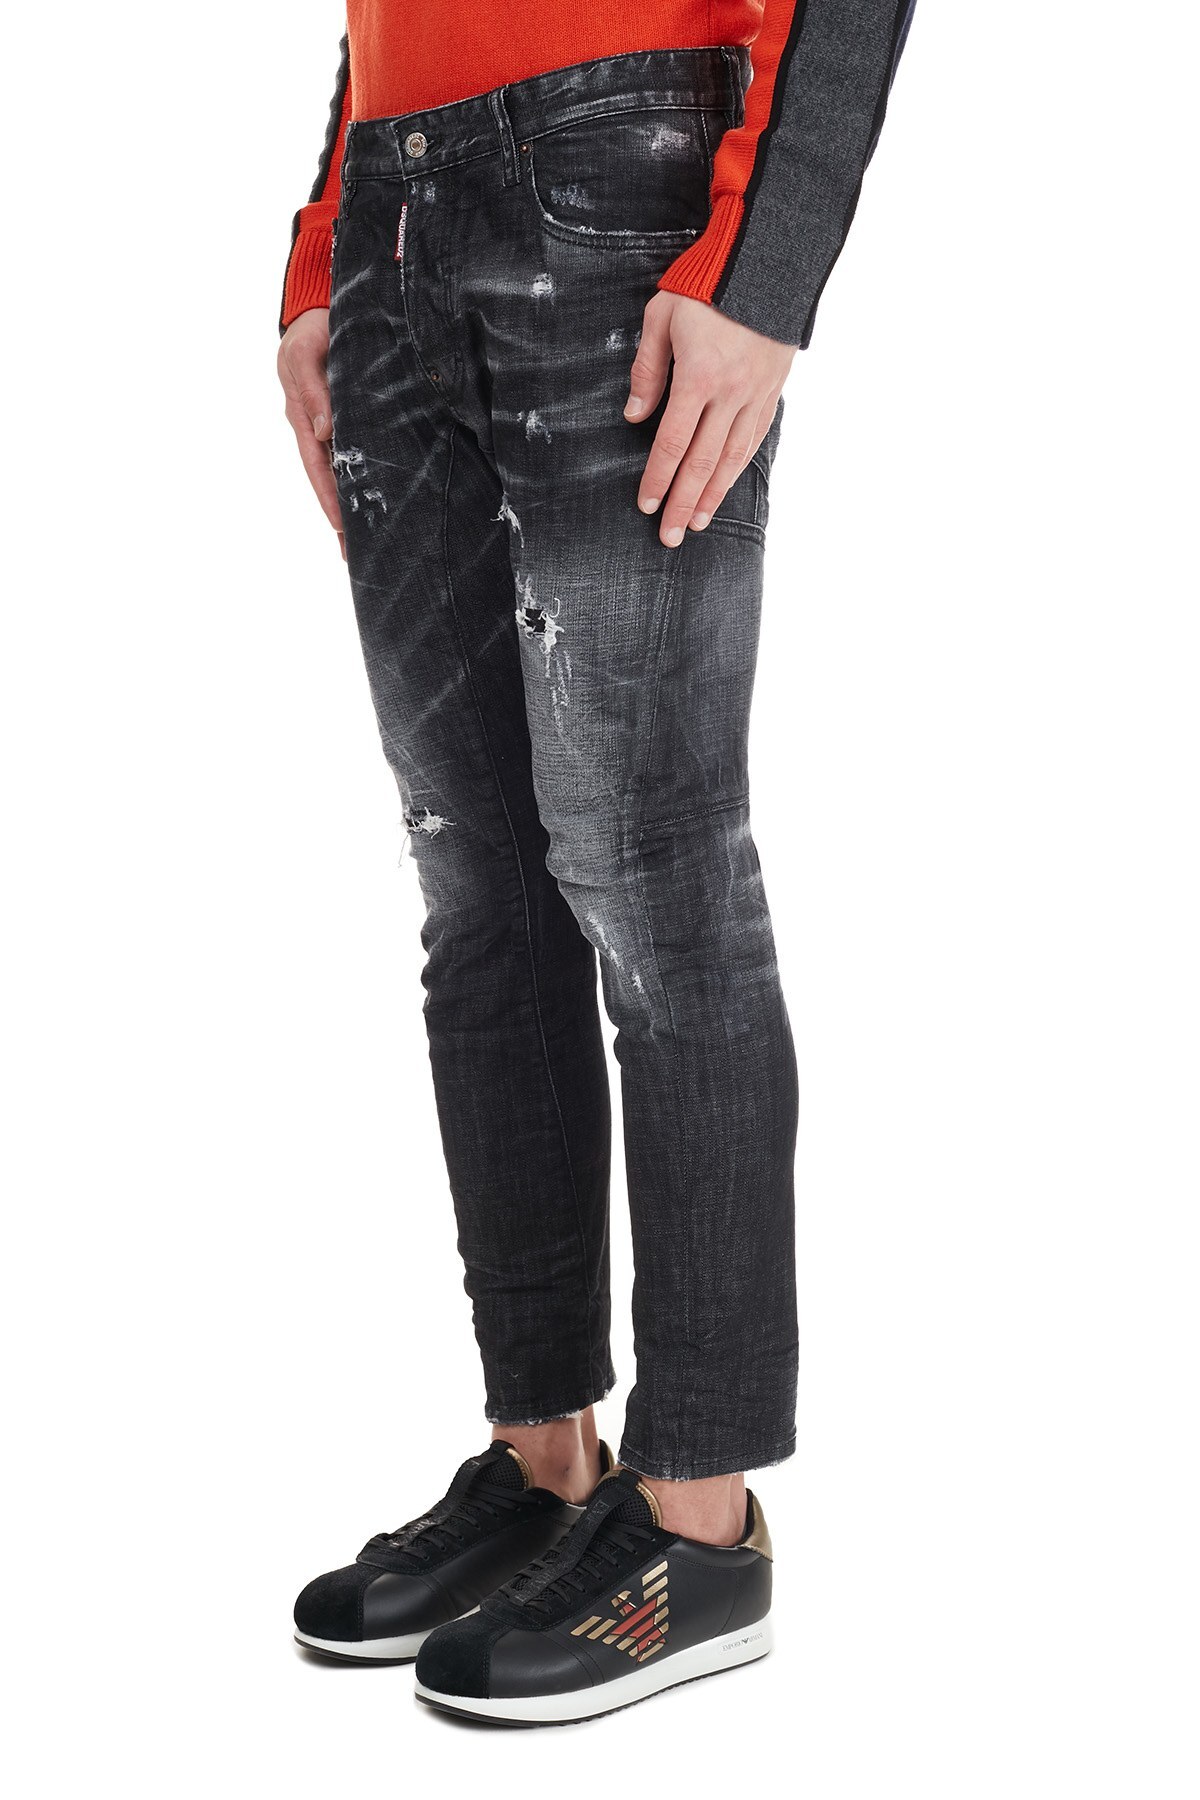 Dsquared2 Pamuklu Jeans Erkek Kot Pantolon S71LB0801 S30357 900 SİYAH